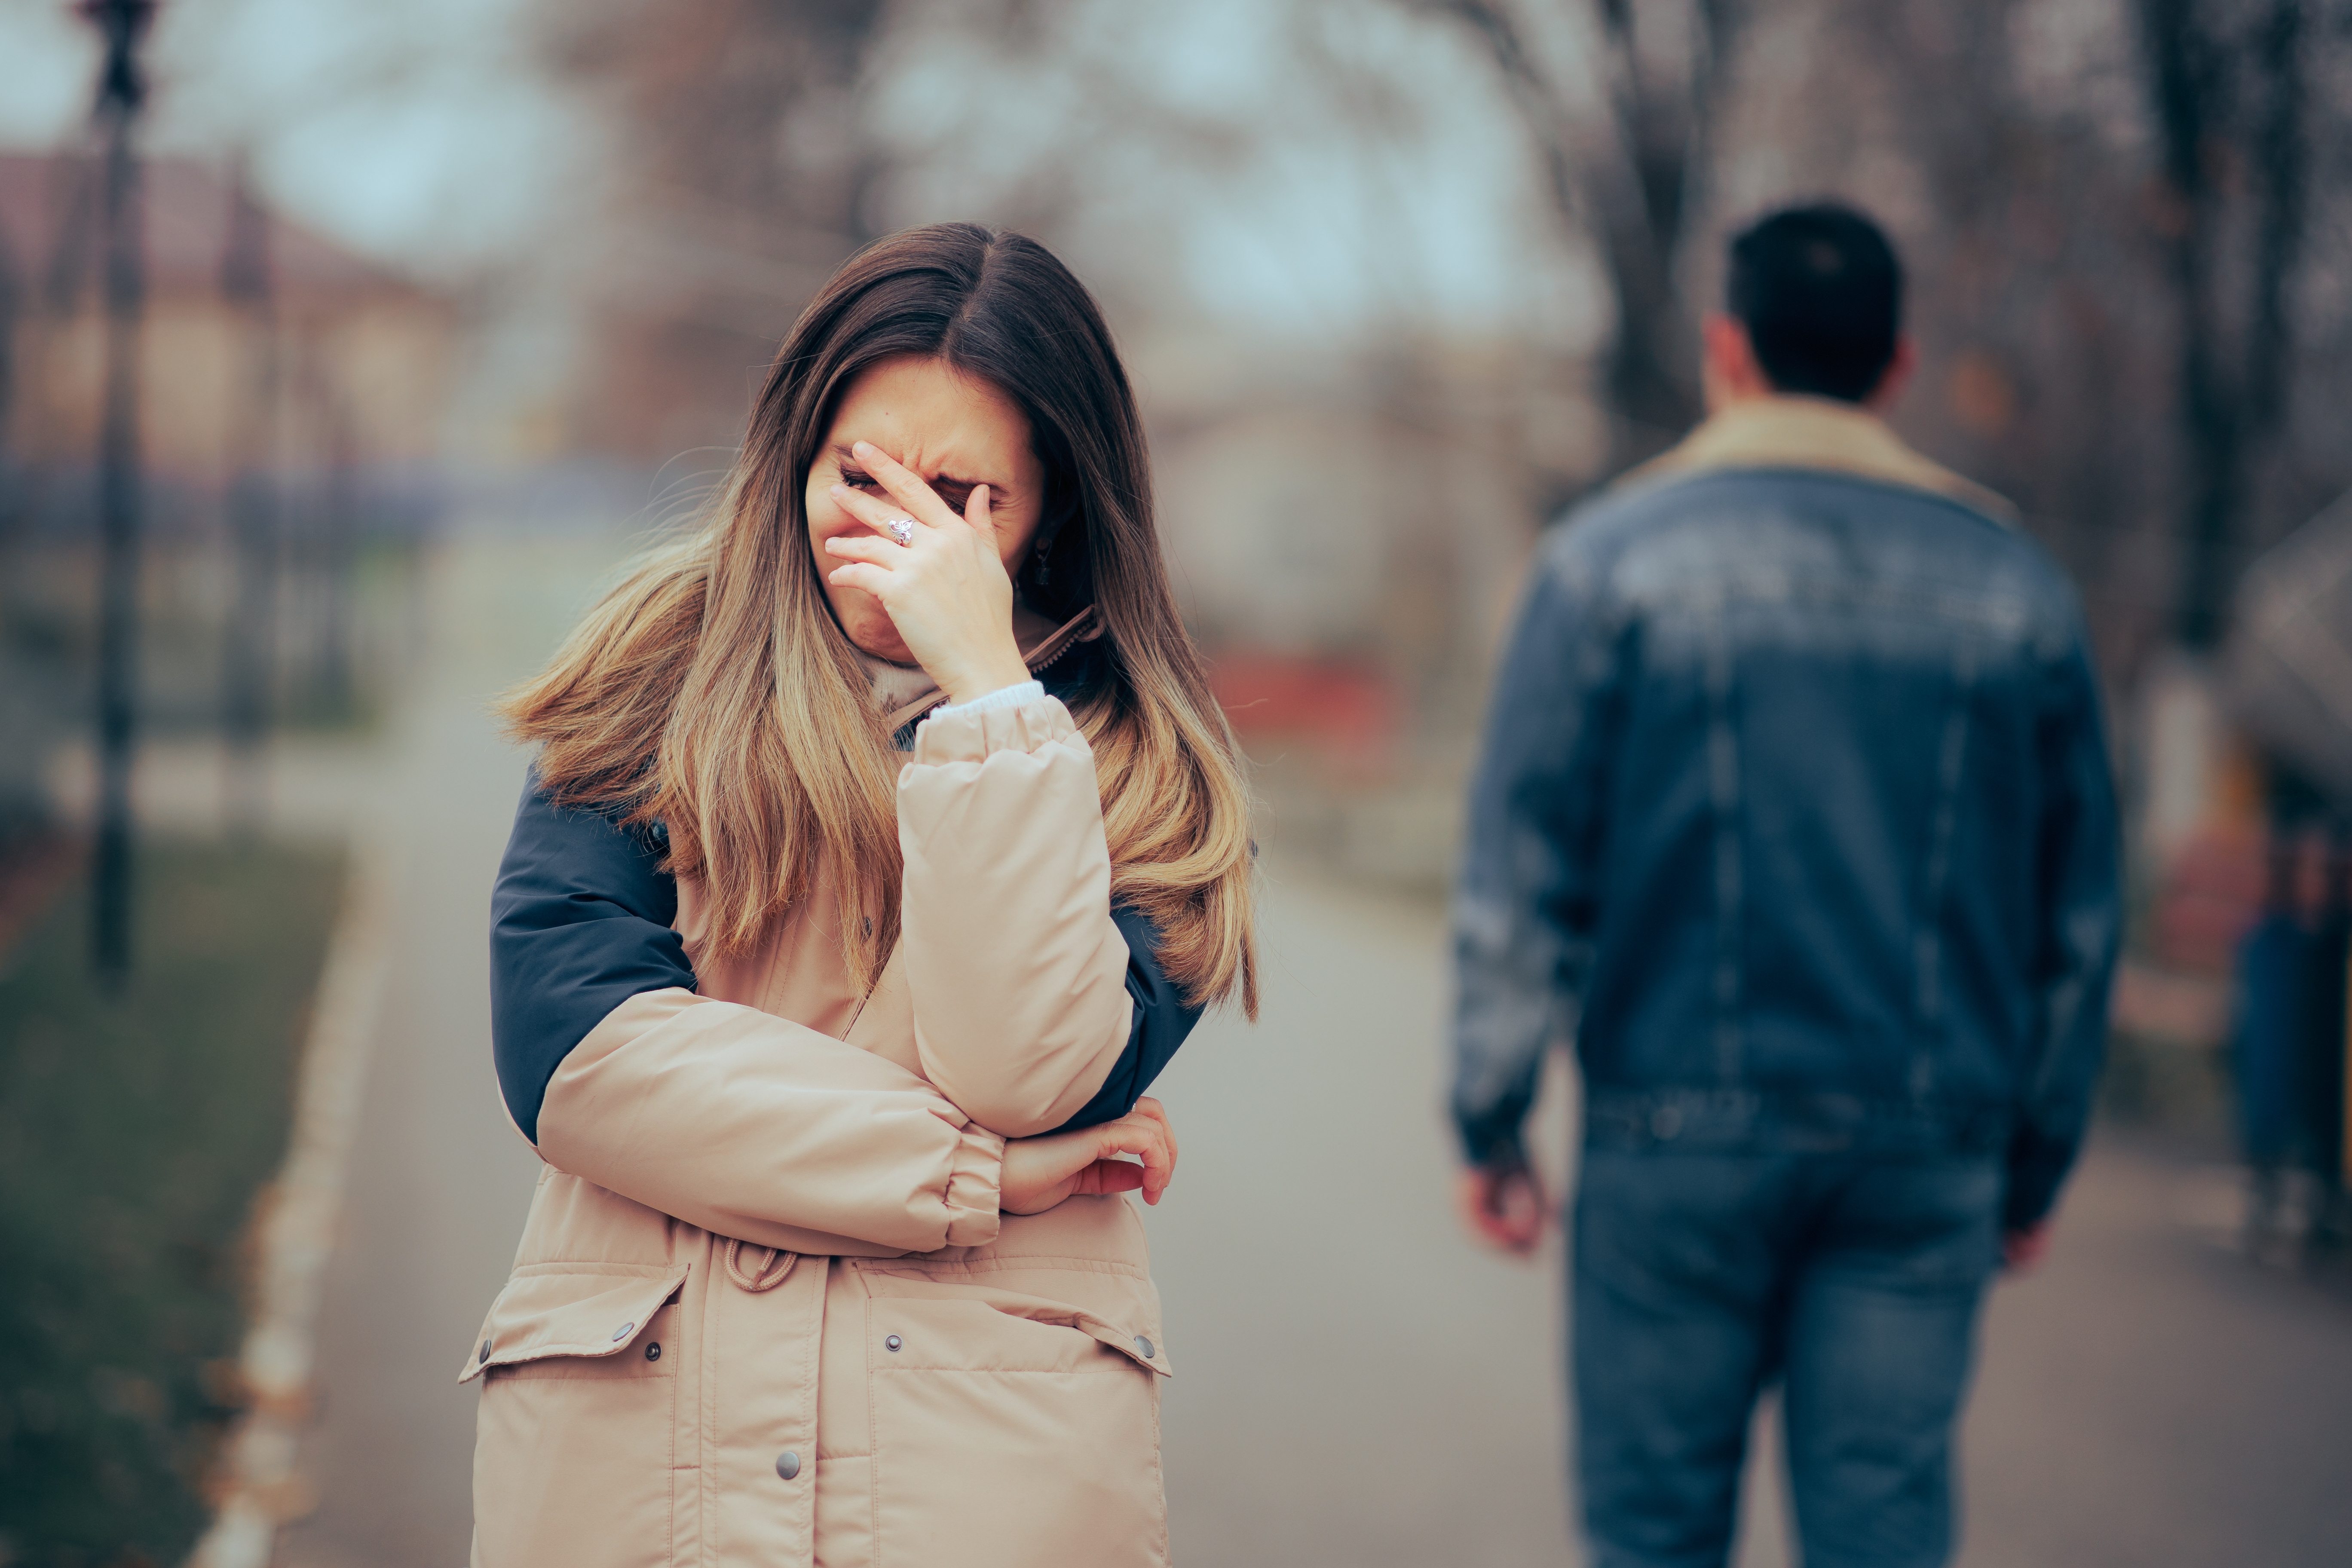 Eine Frau, die nach einer schmerzhaften Trennung aufgebracht ist | Quelle: Shutterstock